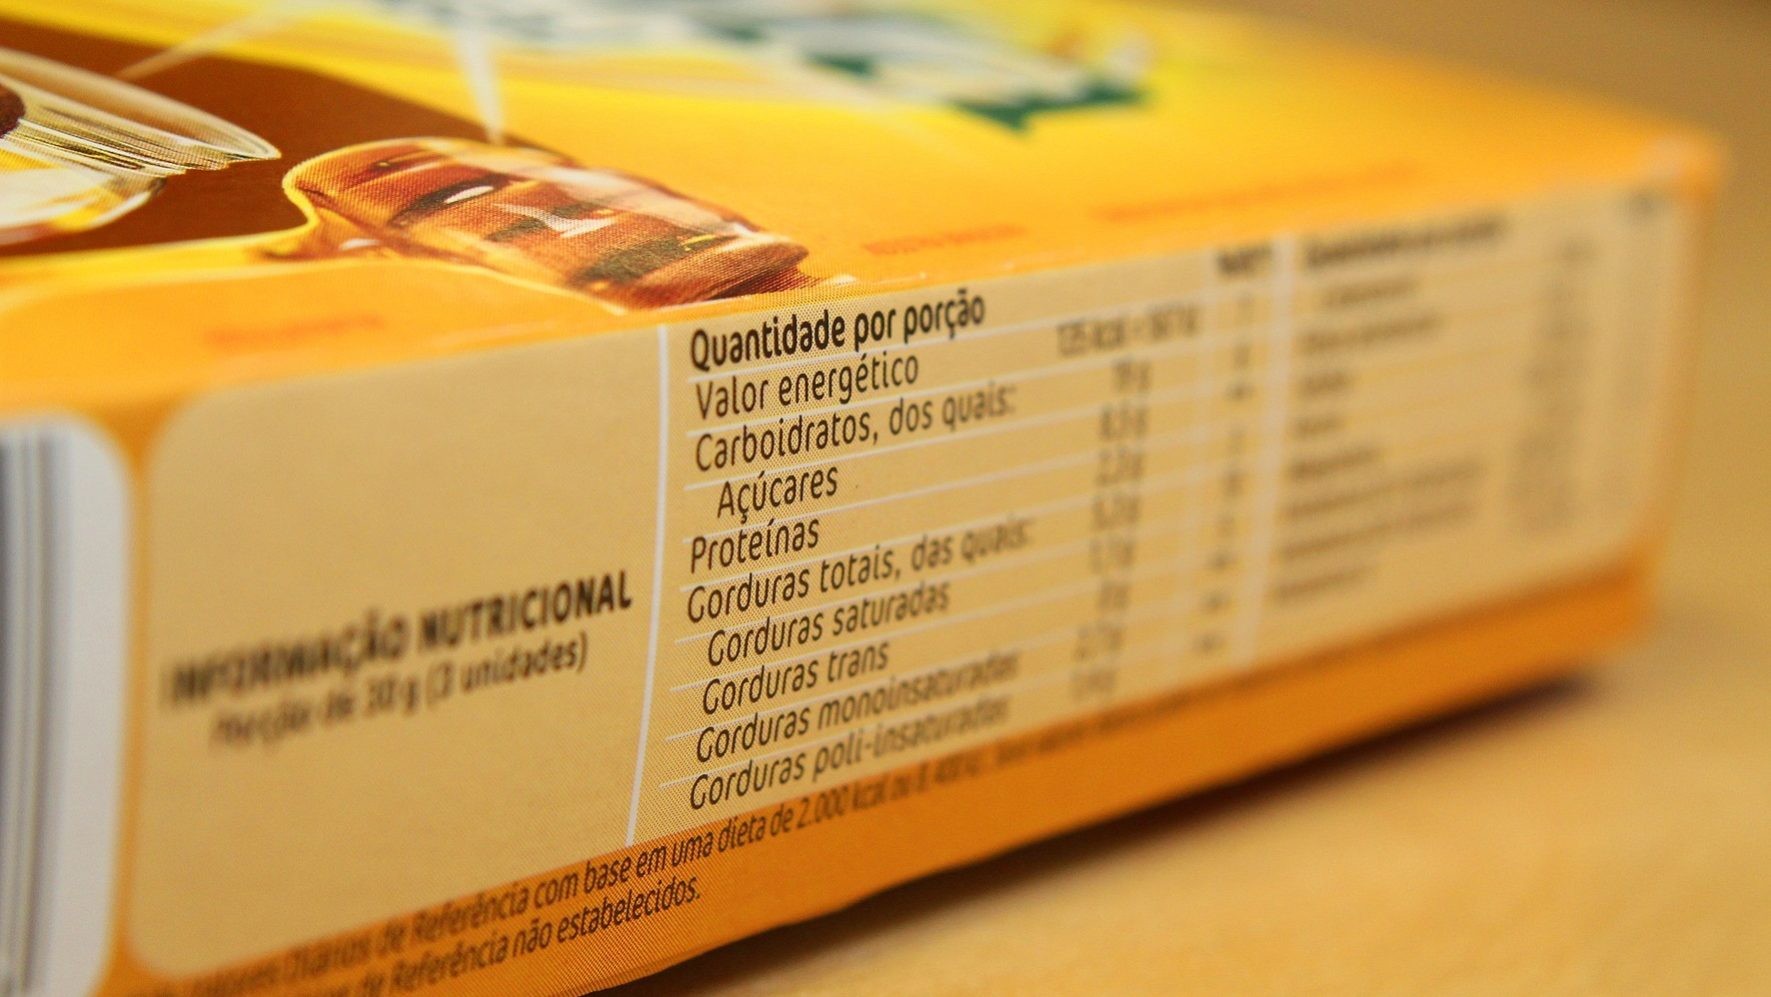 Novo modelo de rotulagem de alimentos ainda pode confundir consumidores (Foto:  MARCOS SANTOS / USP IMAGENS)